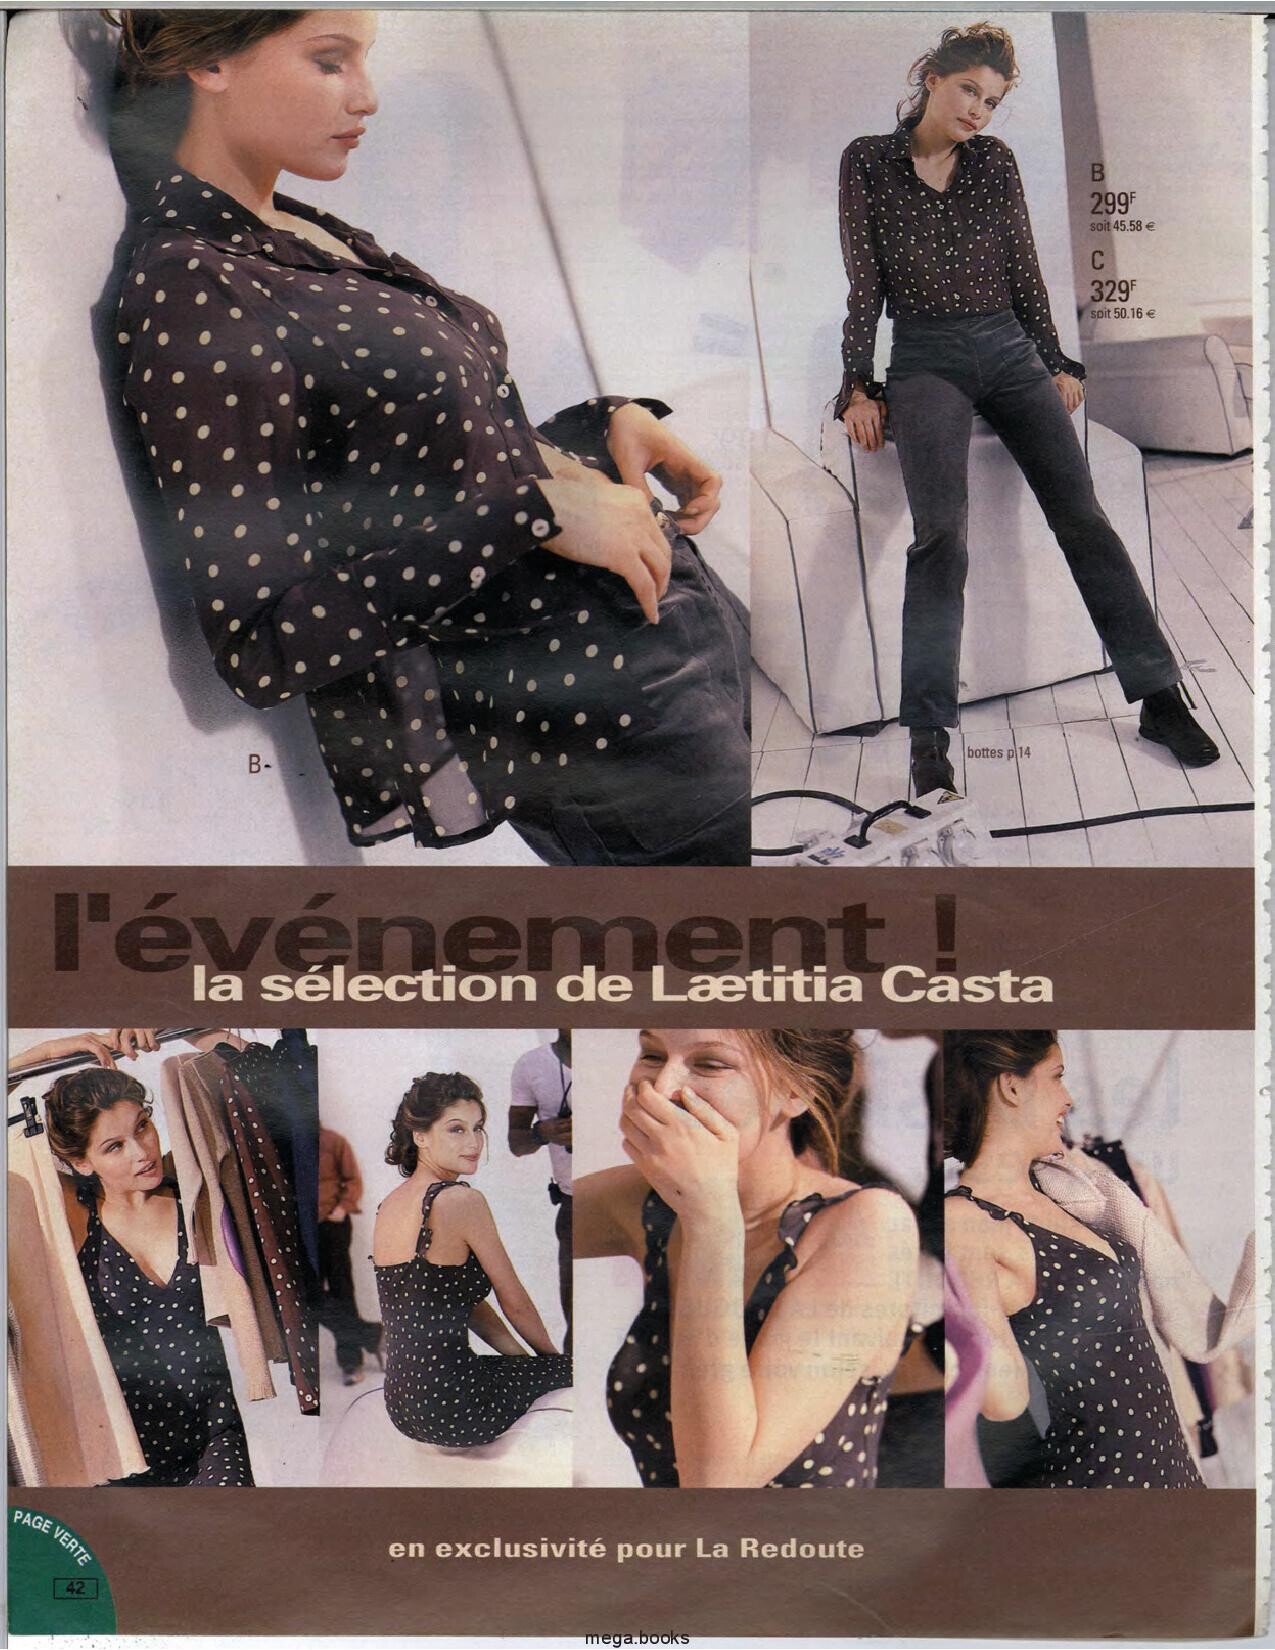 Laetitia Casta - Page 1279 - Female Fashion Models - Bellazon